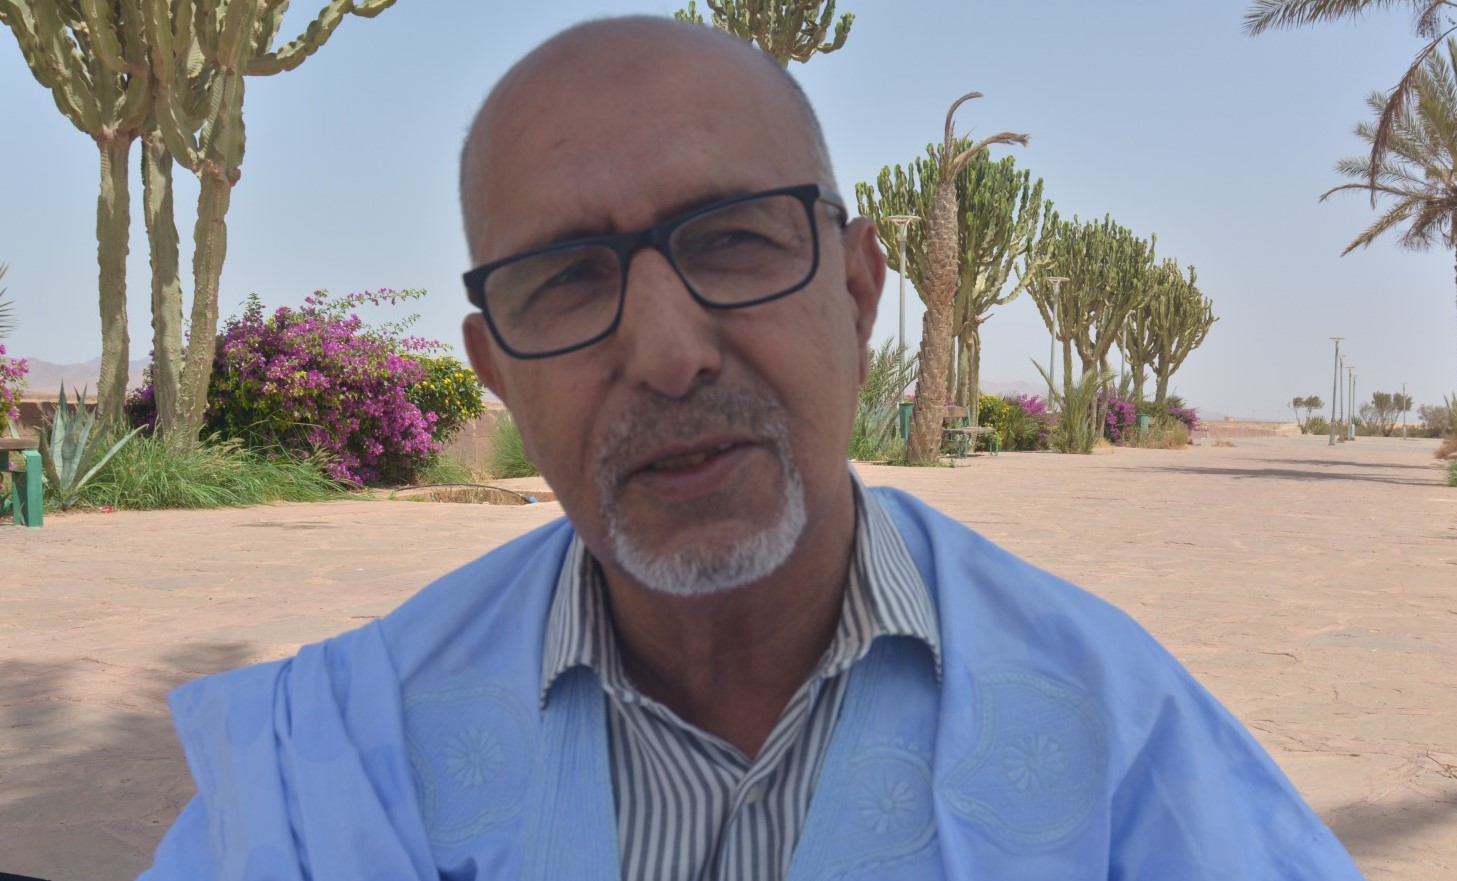 محمد التّراسيم: اختطفت وعذّبت وأنا أول معتقل مغربي صحراويّ وعمري 16 عاما